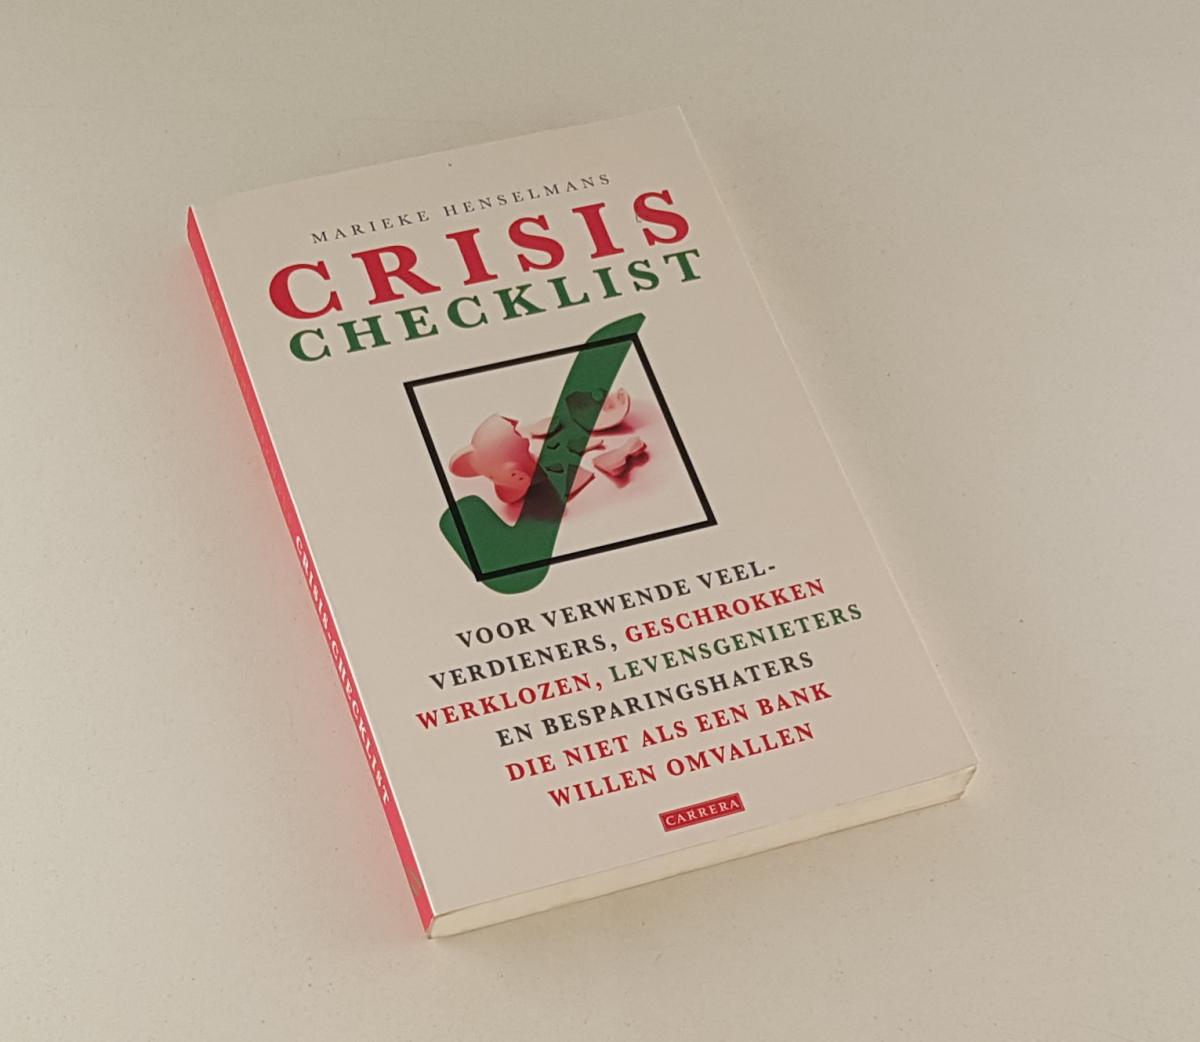 Henselmans, Marieke - Crisis-checklist / voor verwende veelverdieners, geschrokken werklozen, levensgenieters en besparingshaters die niet als een bank willen omvallen